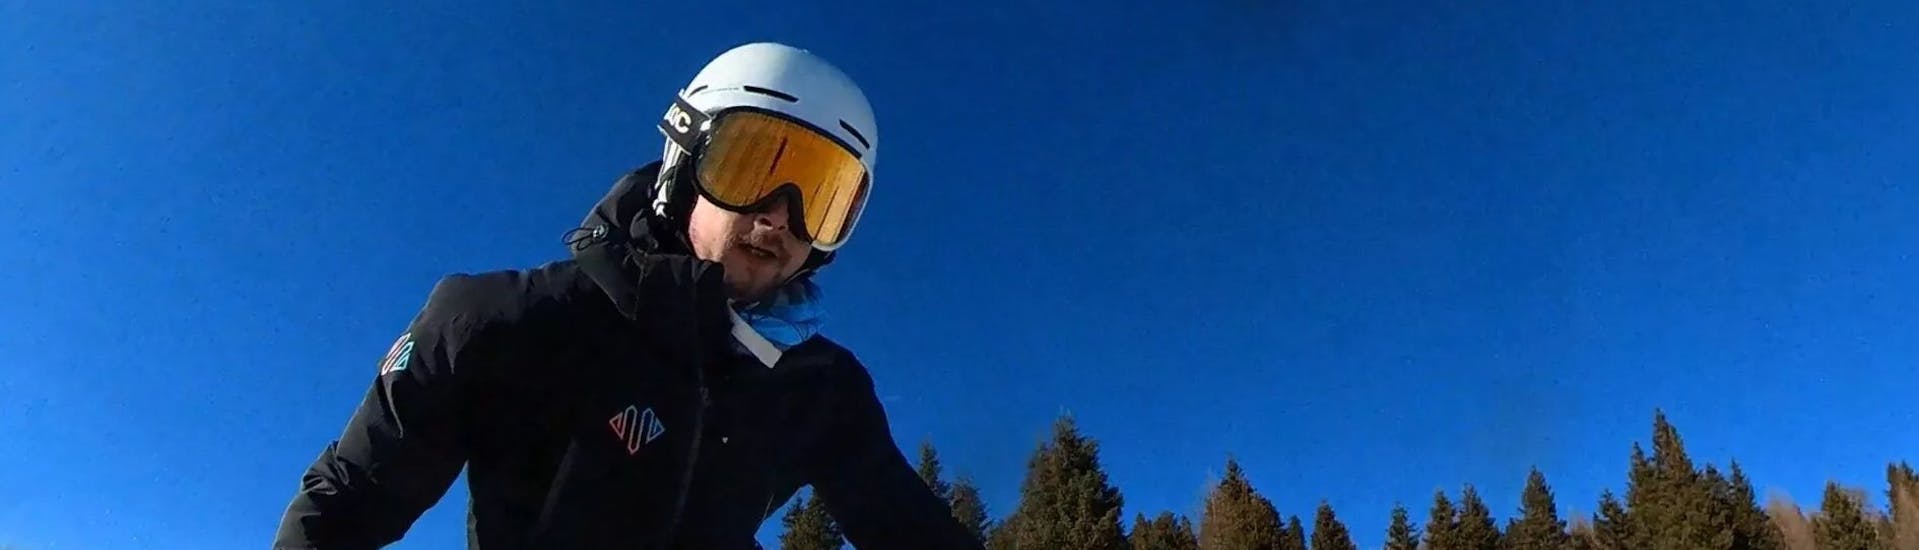 Skilessen voor kinderen vanaf 6 jaar - ervaren.